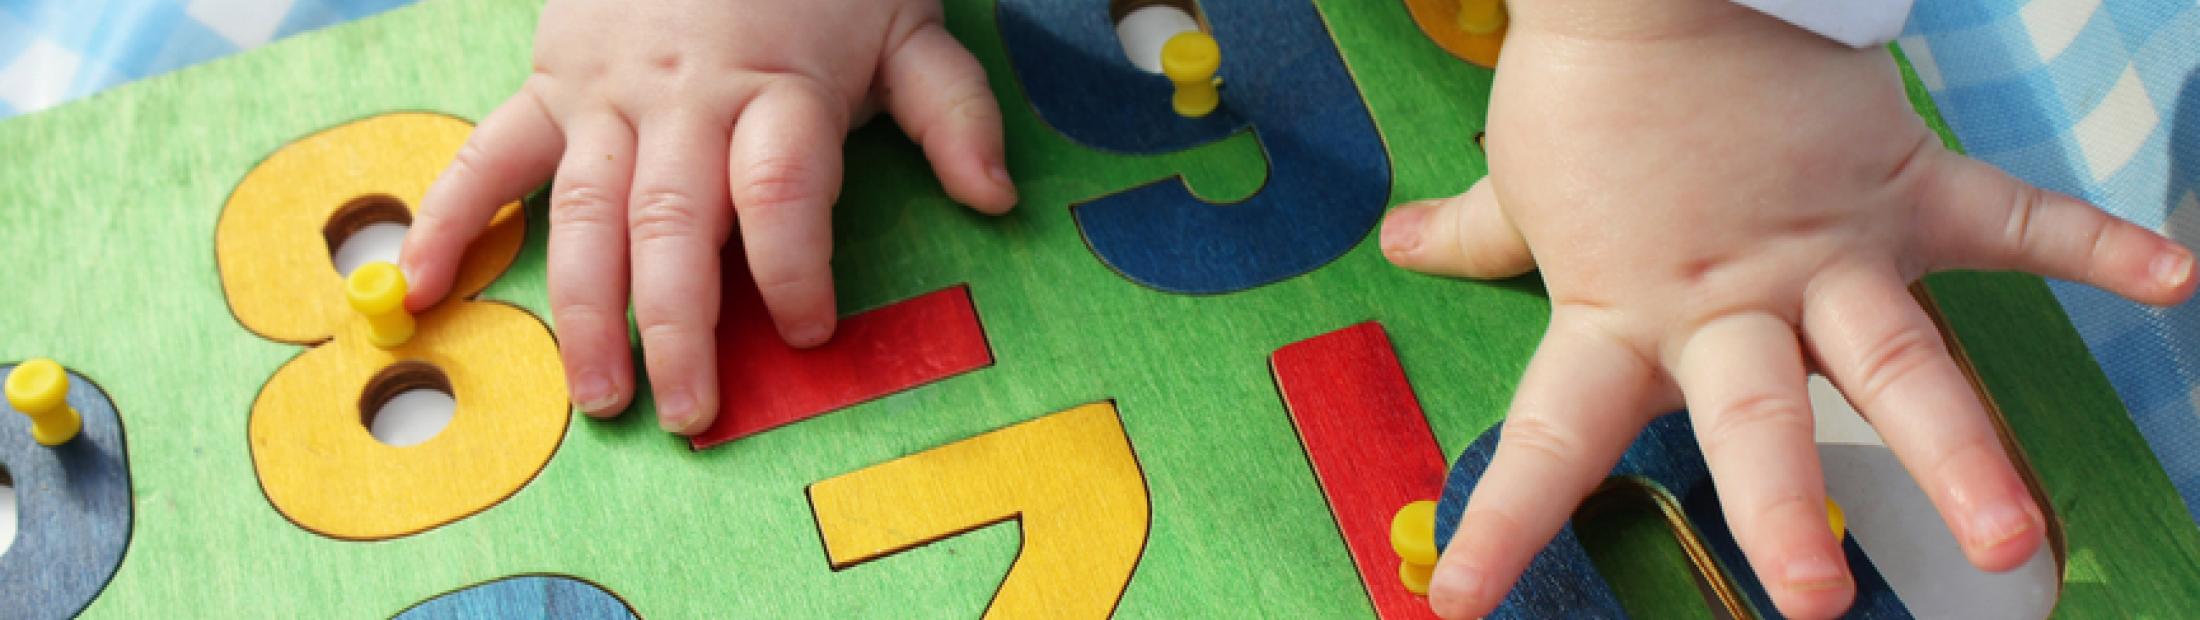 Juguetes educativos para bebés: un aprendizaje temprano